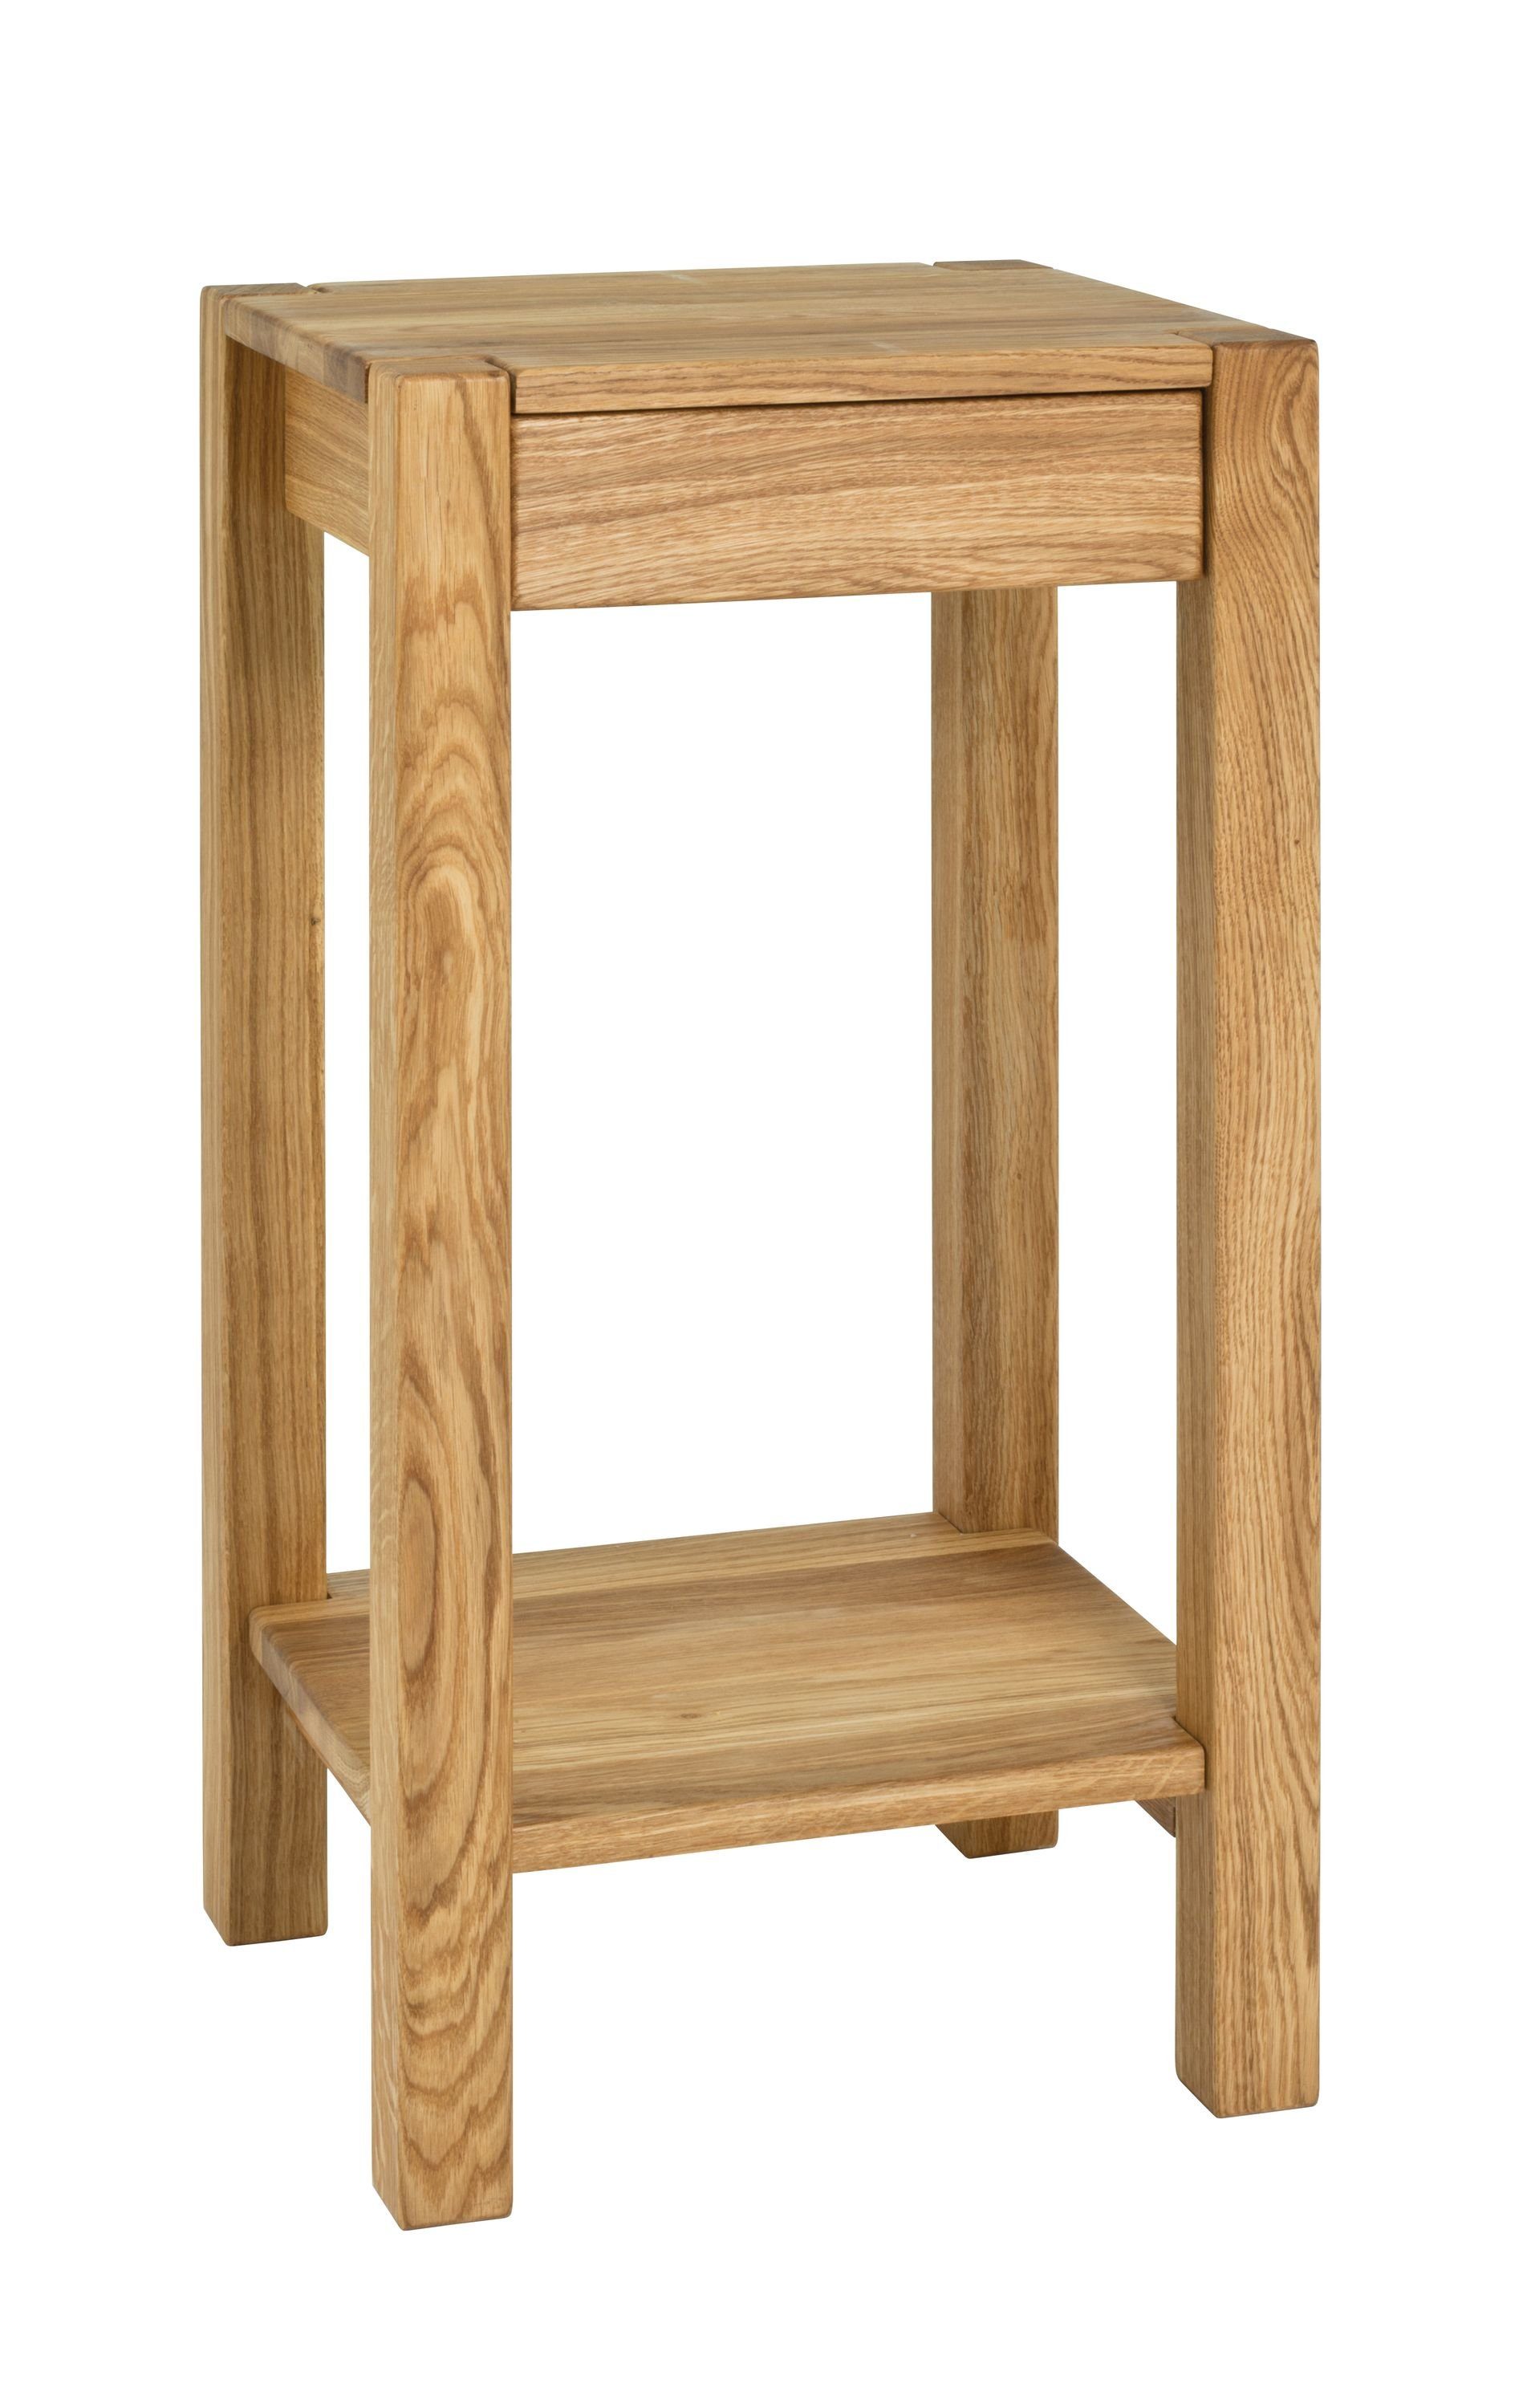 HAKU Beistelltisch Beistelltisch, HAKU Möbel Beistelltisch (BHT 37x73x33 cm) BHT 37x73x33 cm braun